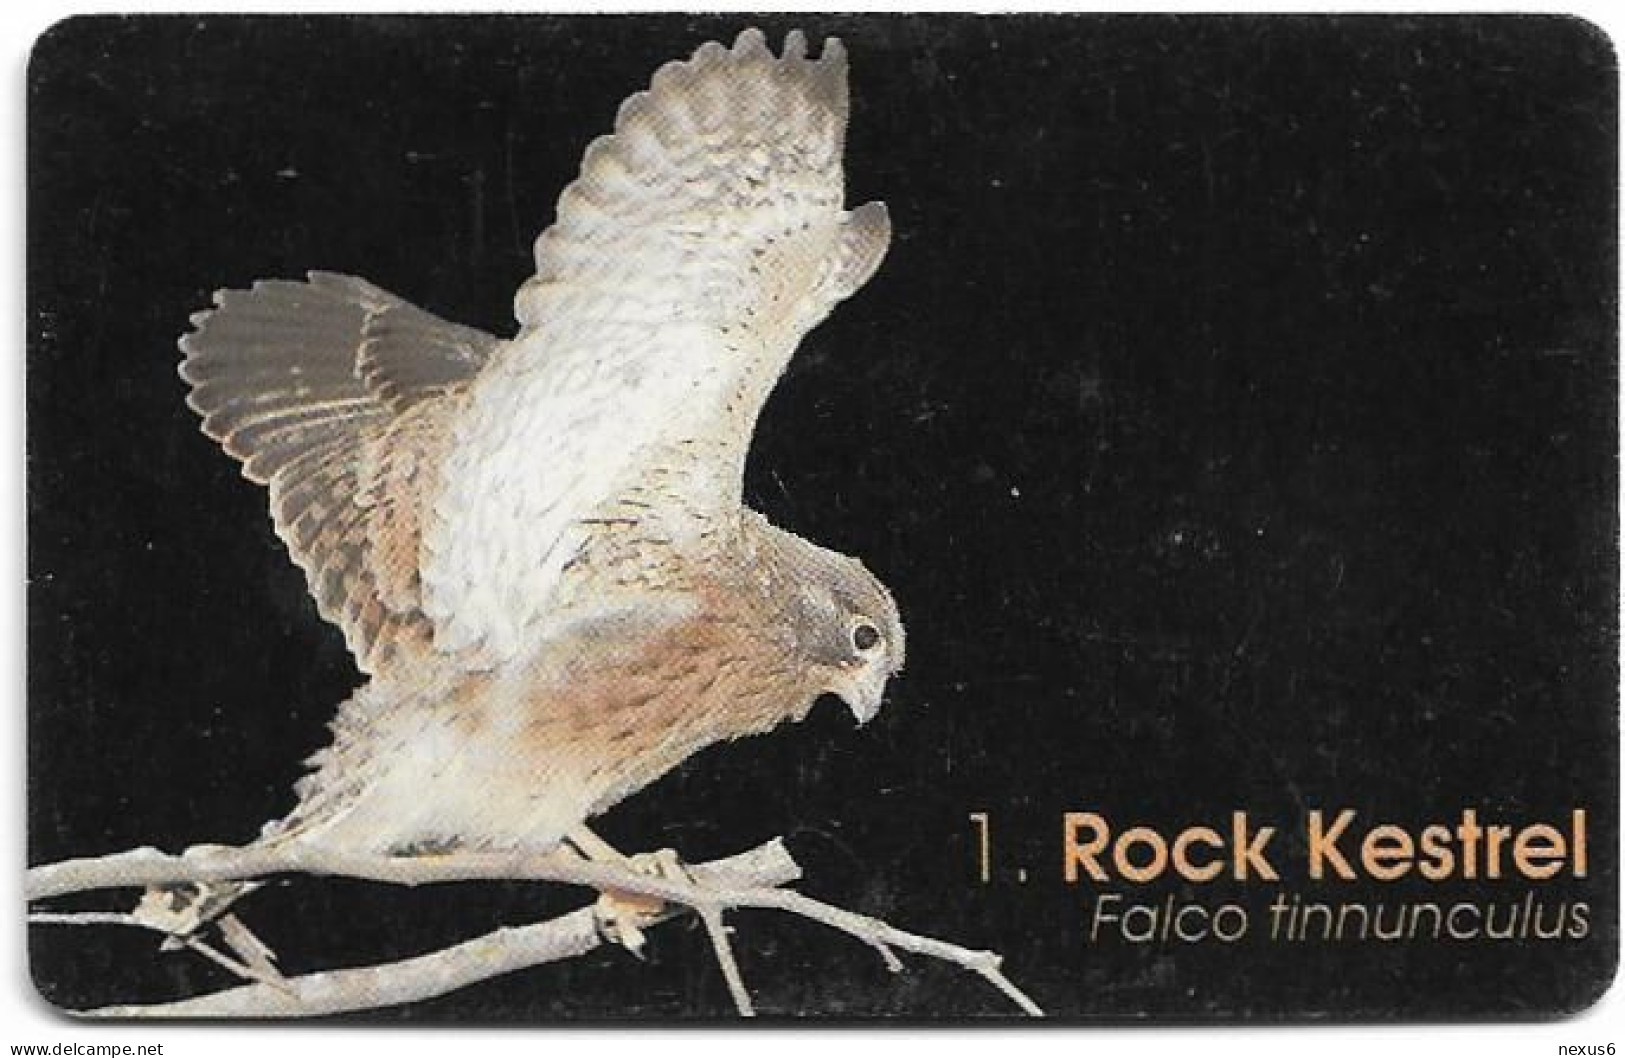 Namibia - Telecom Namibia - Birds Of Namibia, Rock Kestrel - 20$, 1999, Used - Namibia